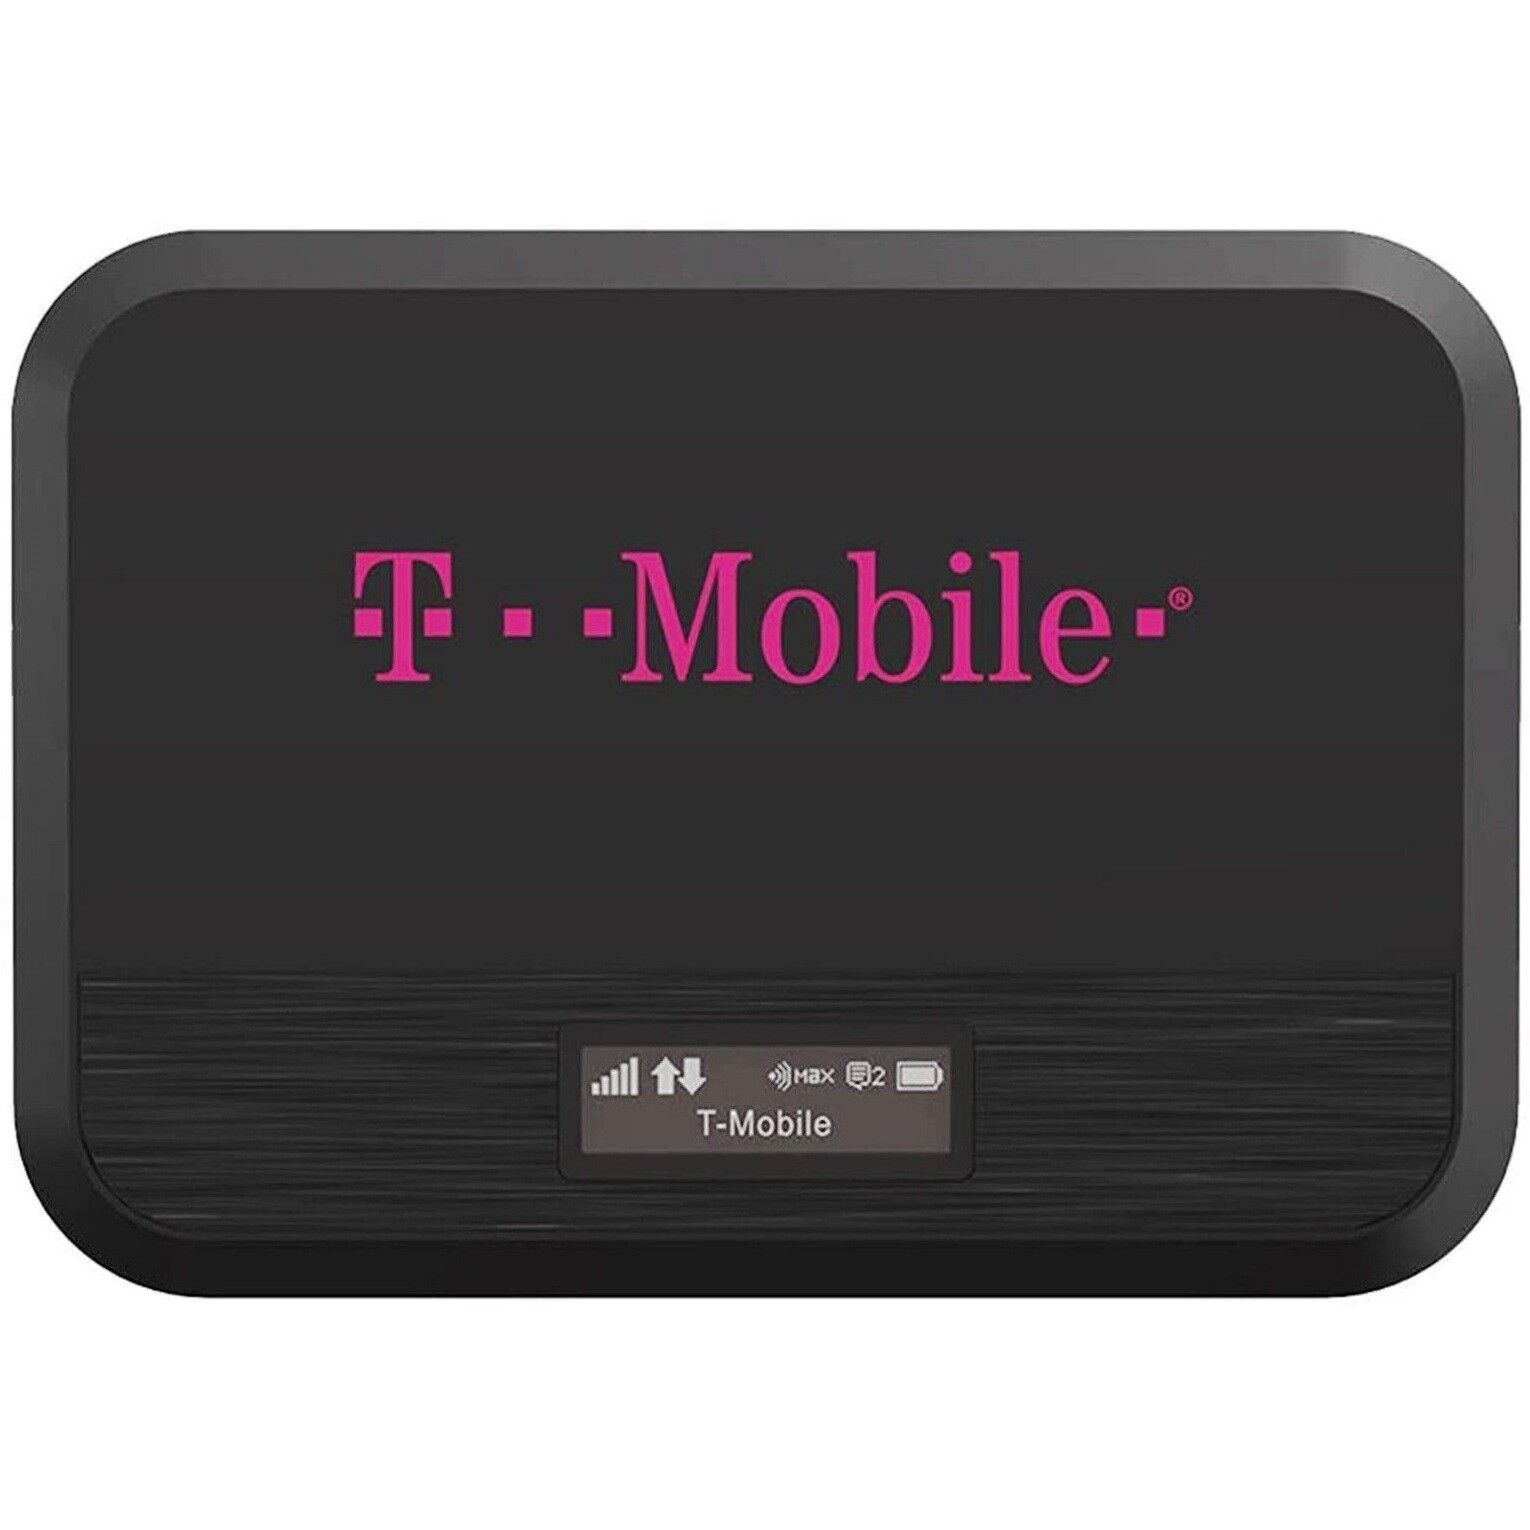 T-Mobile Franklin T9 - RT717 - Black (Unlocked) 4G LTE GSM WiFi Mobile Hotspot